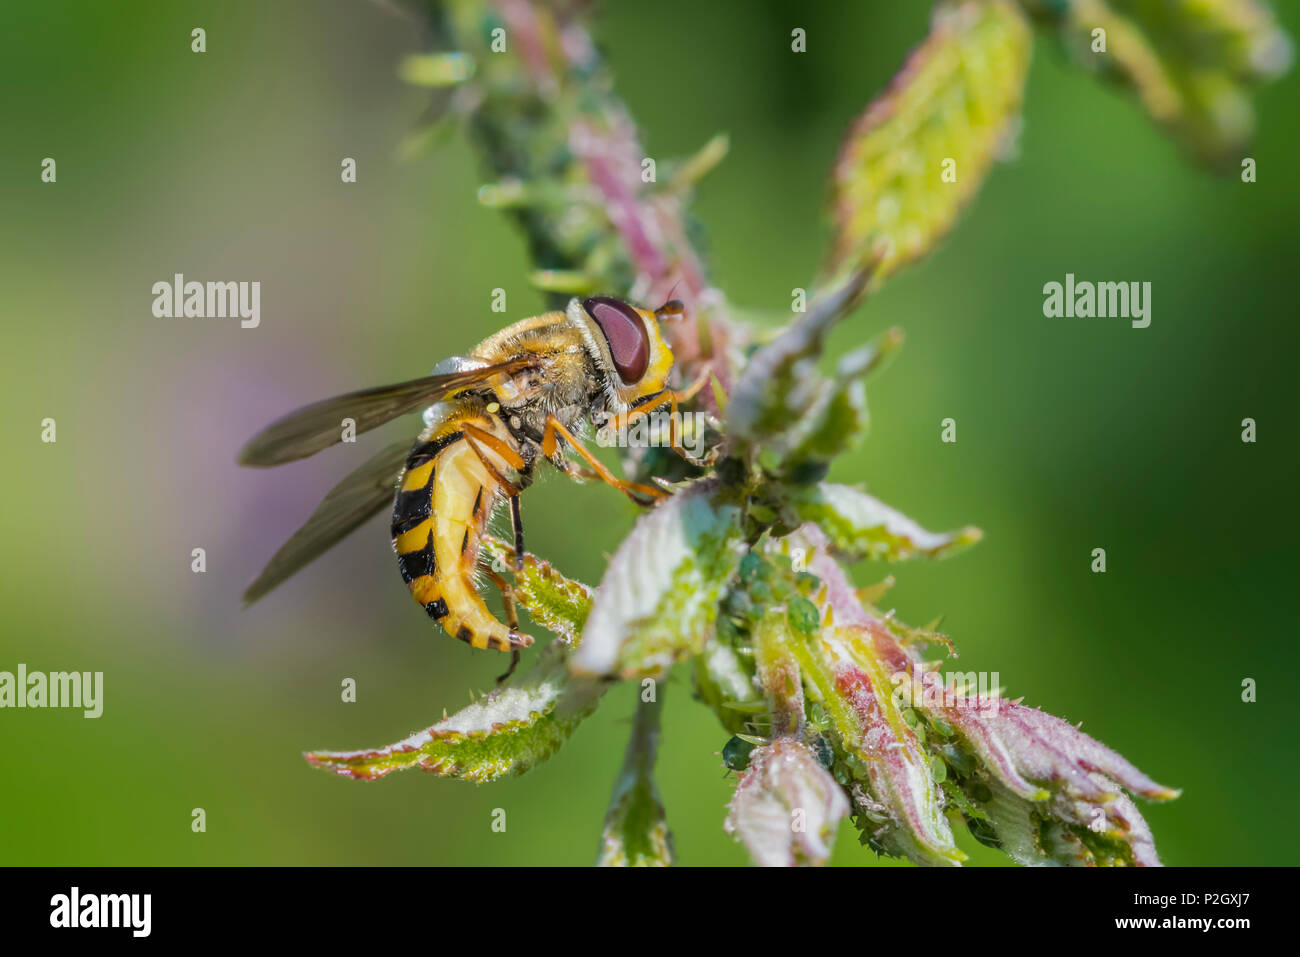 Femmina Hoverfly comune, Syrphus ribesii, a inizio estate (giugno) su un fiore nel West Sussex, in Inghilterra, Regno Unito. Il giallo hind femore indica la sua femmina. Foto Stock